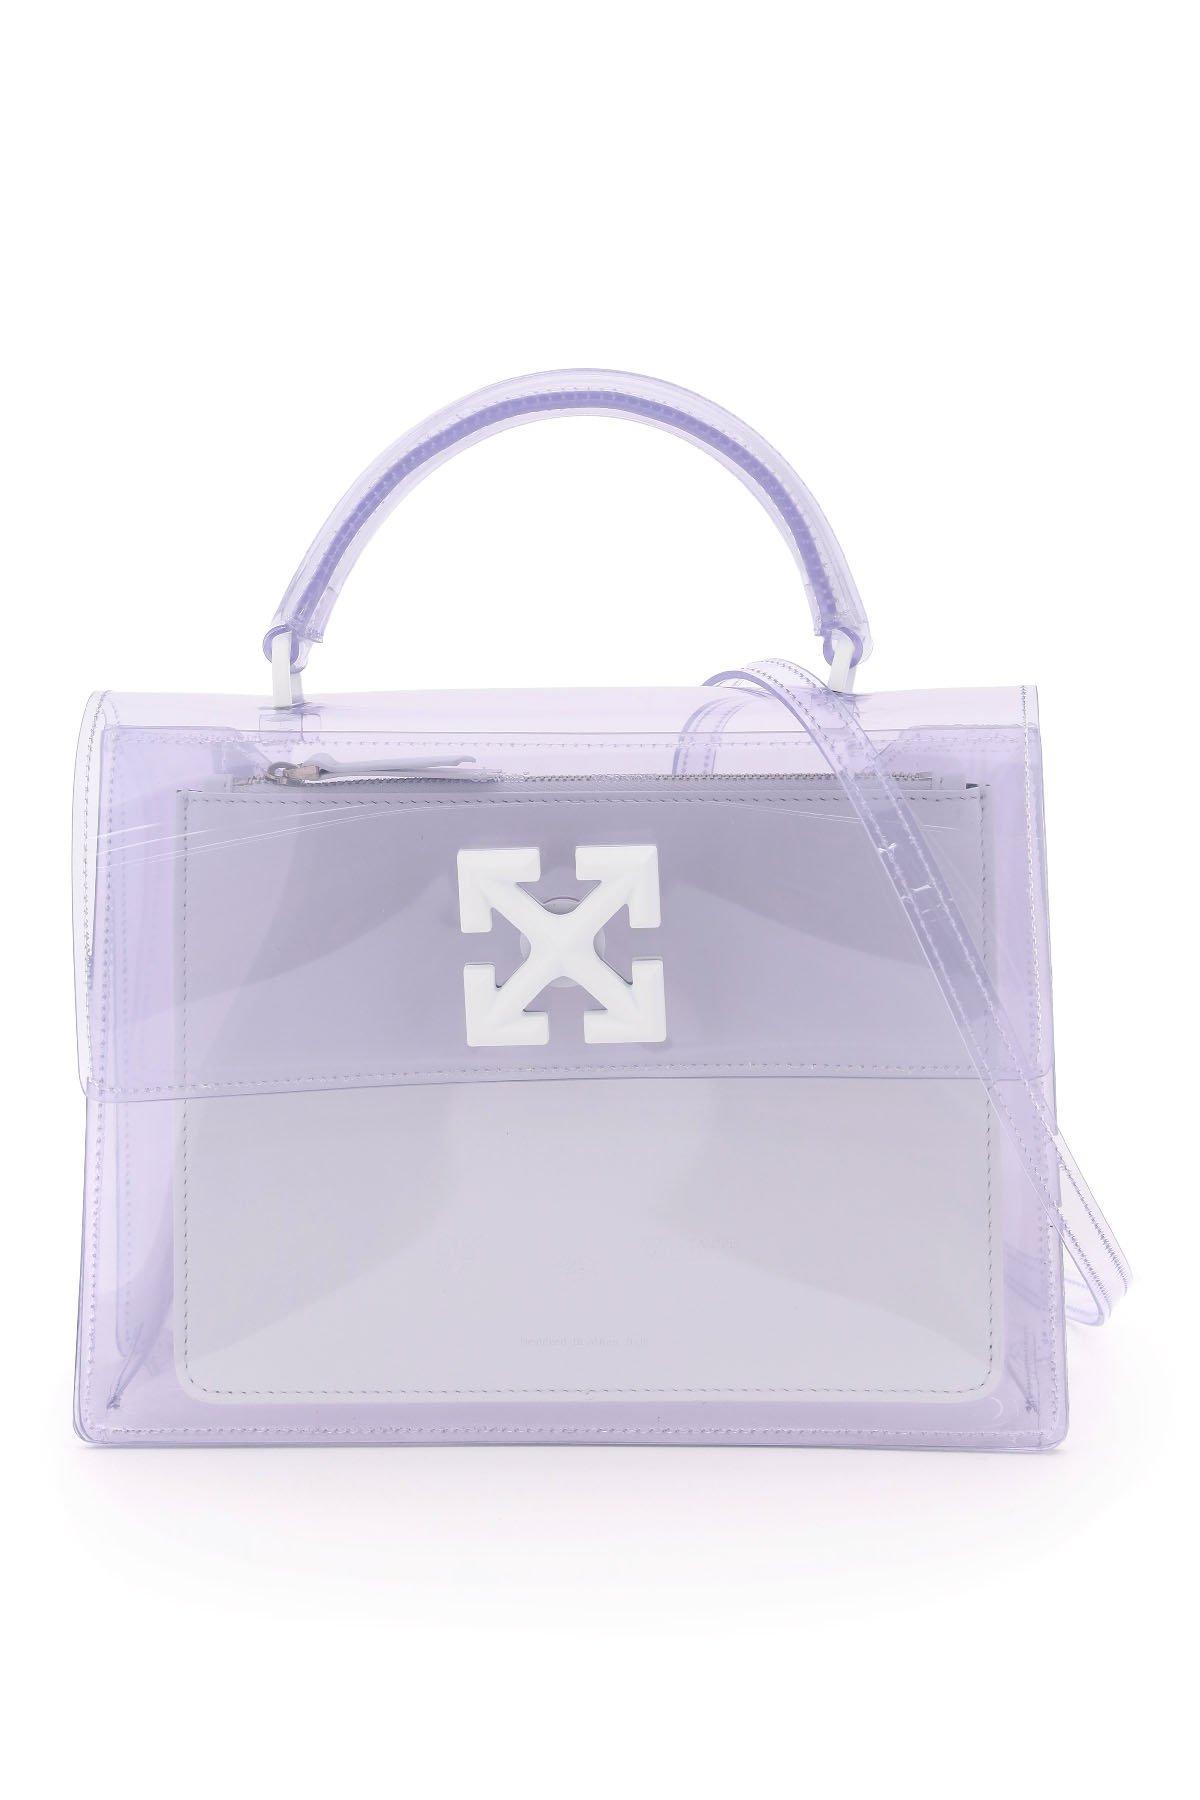 Off-White c/o Virgil Abloh Jitney 2.8 Transparent Handbag in